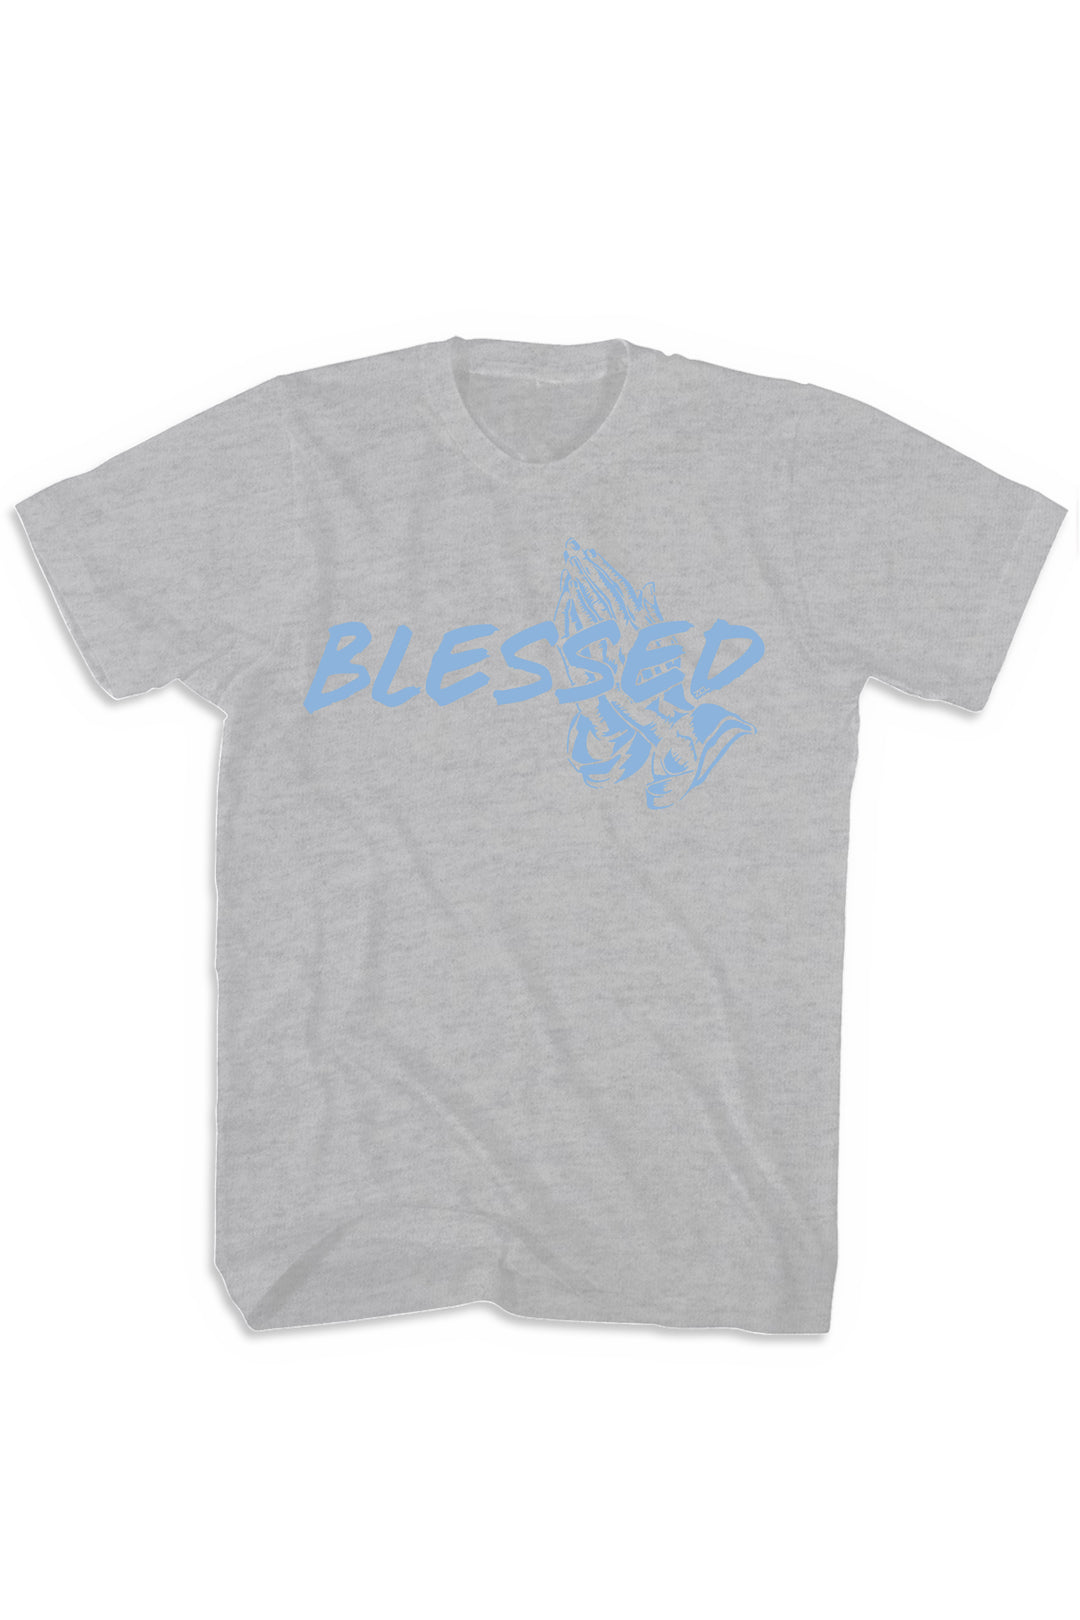 Blessed Tee (Powder Blue Logo) - Zamage